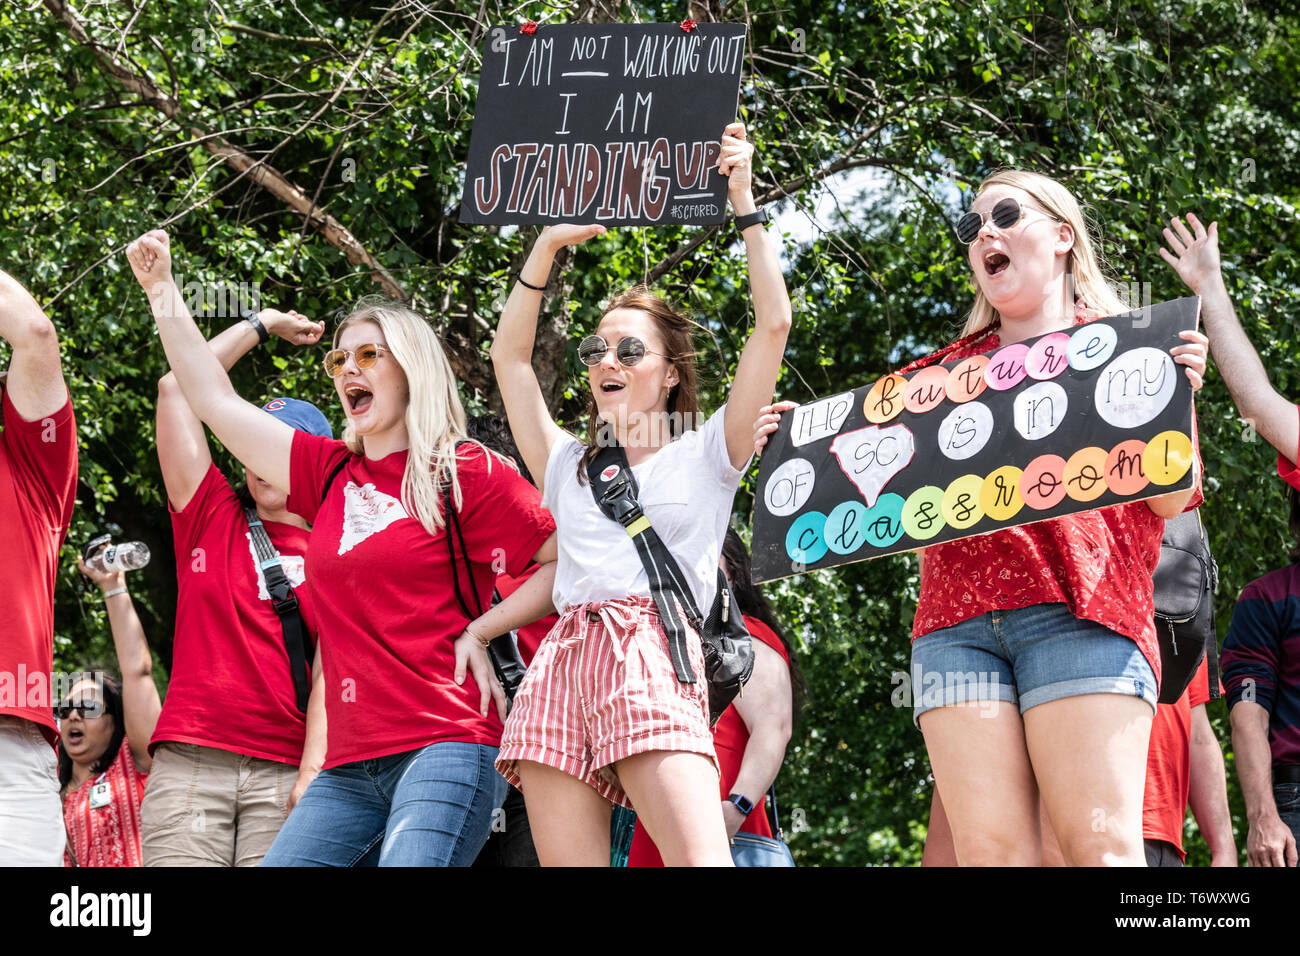 Columbia, South Carolina USA - Mai 1, 2019: 10.000 Lehrkräfte aus ganz South Carolina Band zusammen zu schlechten Arbeitsbedingungen in S.C. Schulen protestieren. Stockfoto